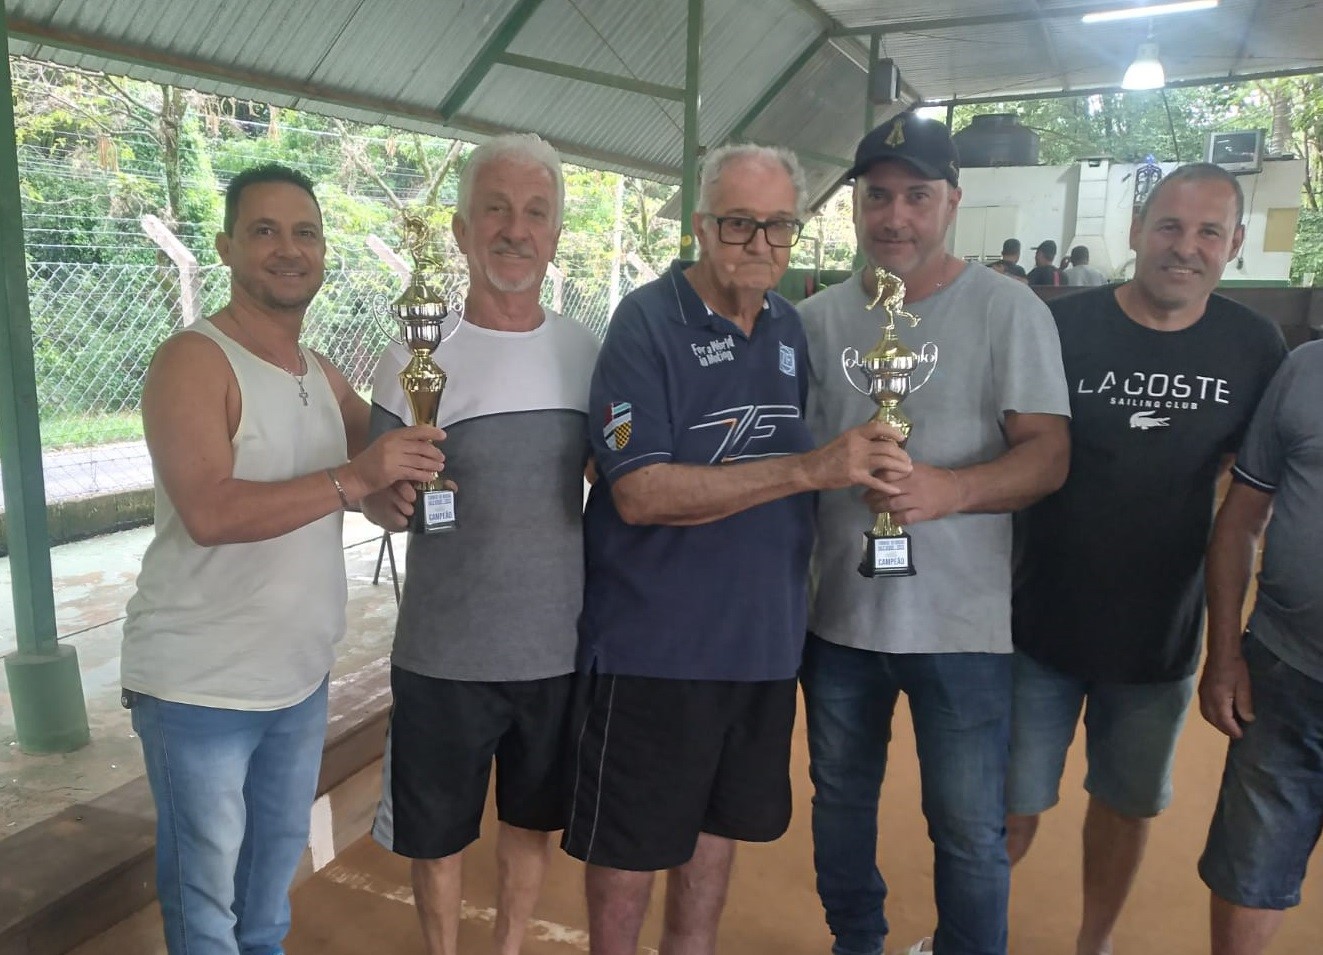 Torneio de Bocha está sendo disputado no Campo do Jardim Santa Clara -  Prefeitura de Pedreira